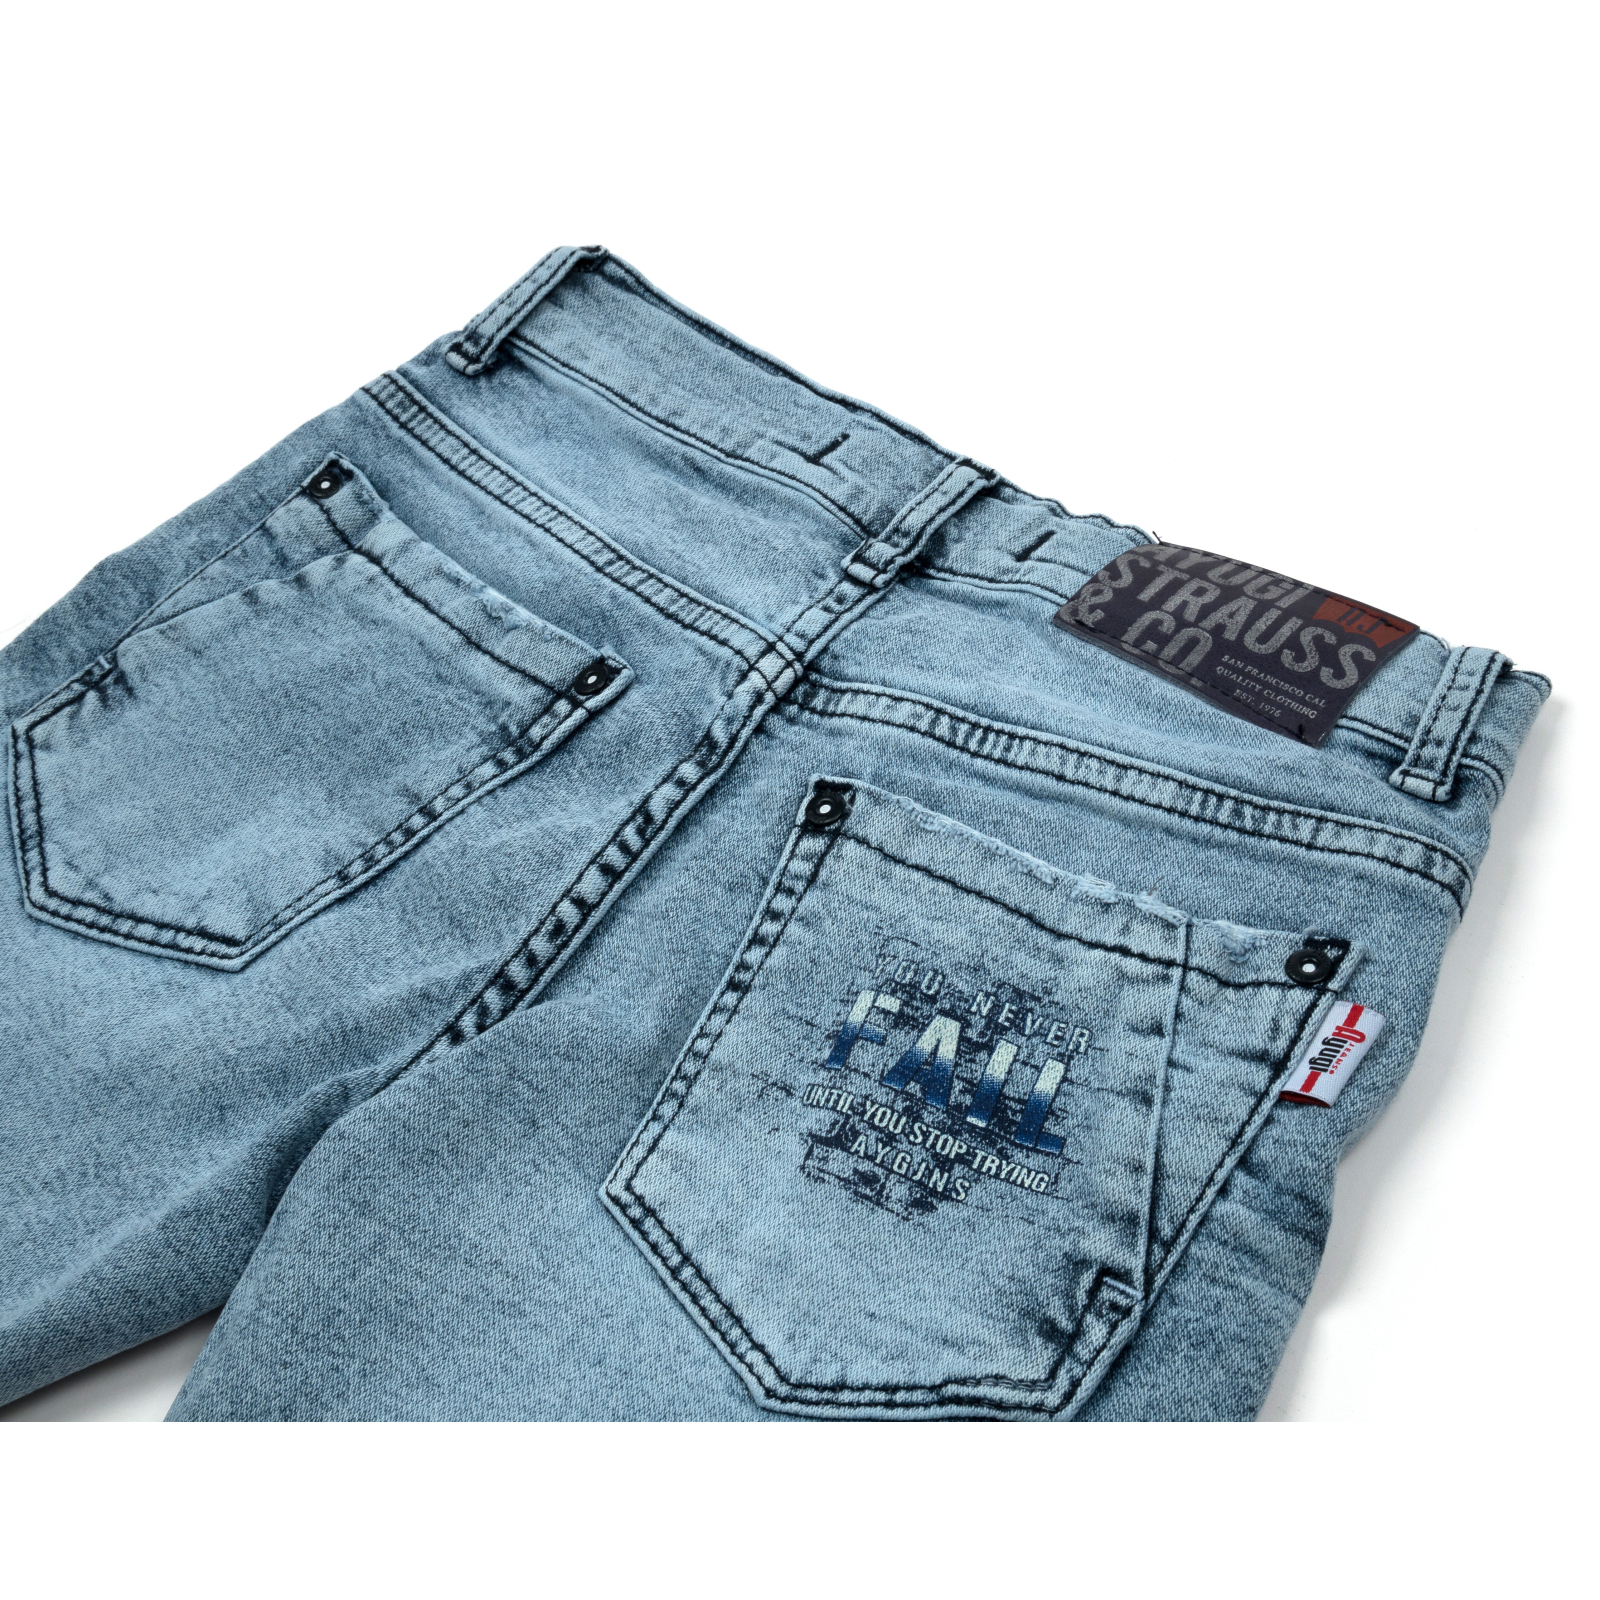 Шорты A-Yugi джинсовые (5260-158B-blue) изображение 4